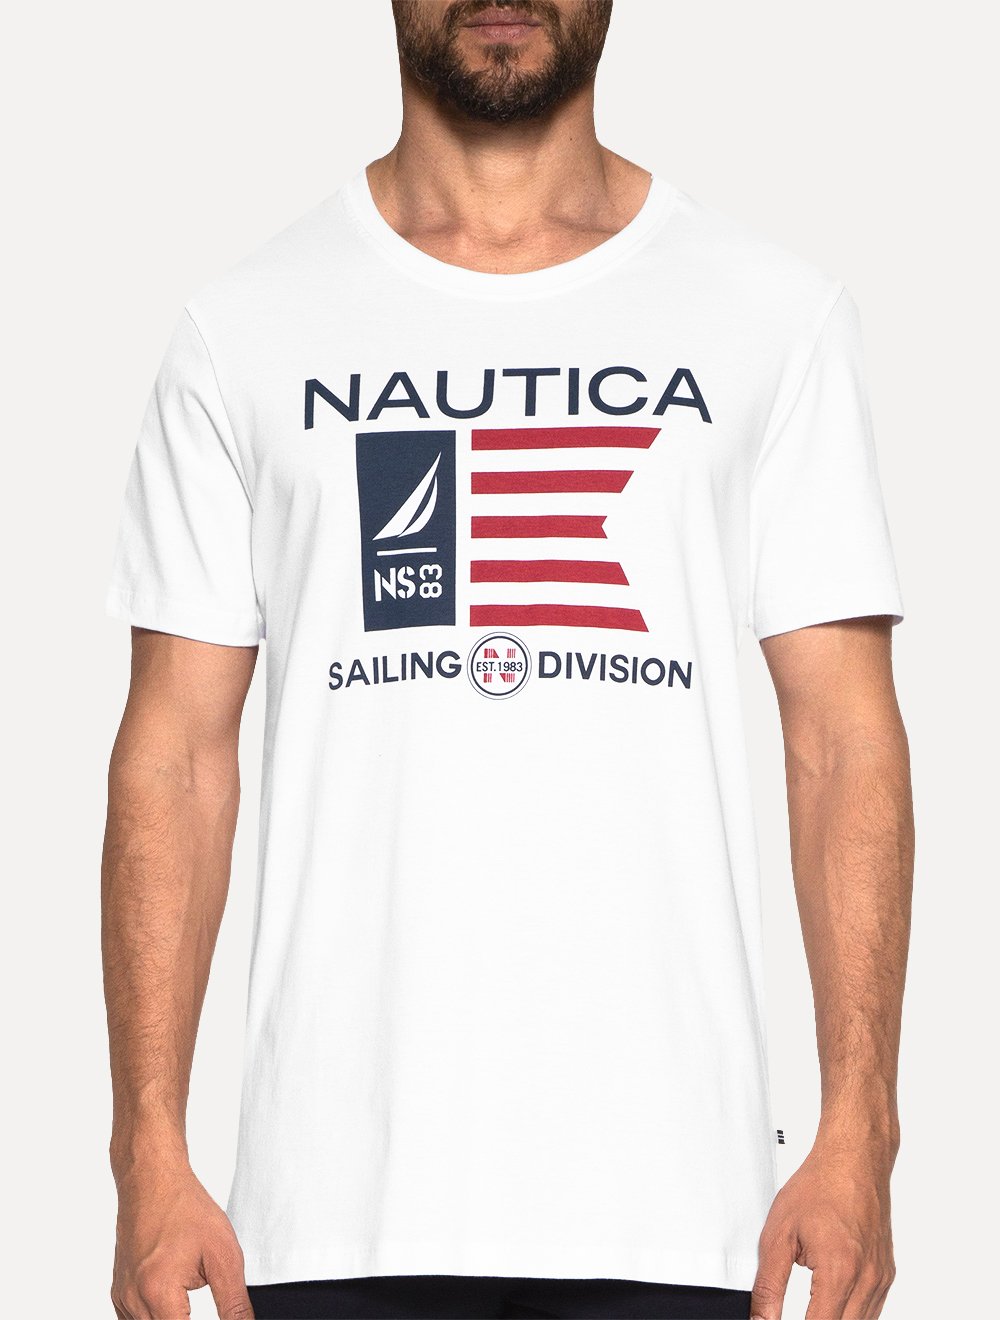 Camiseta Nautica Masculina Flag Sailing Division Branca